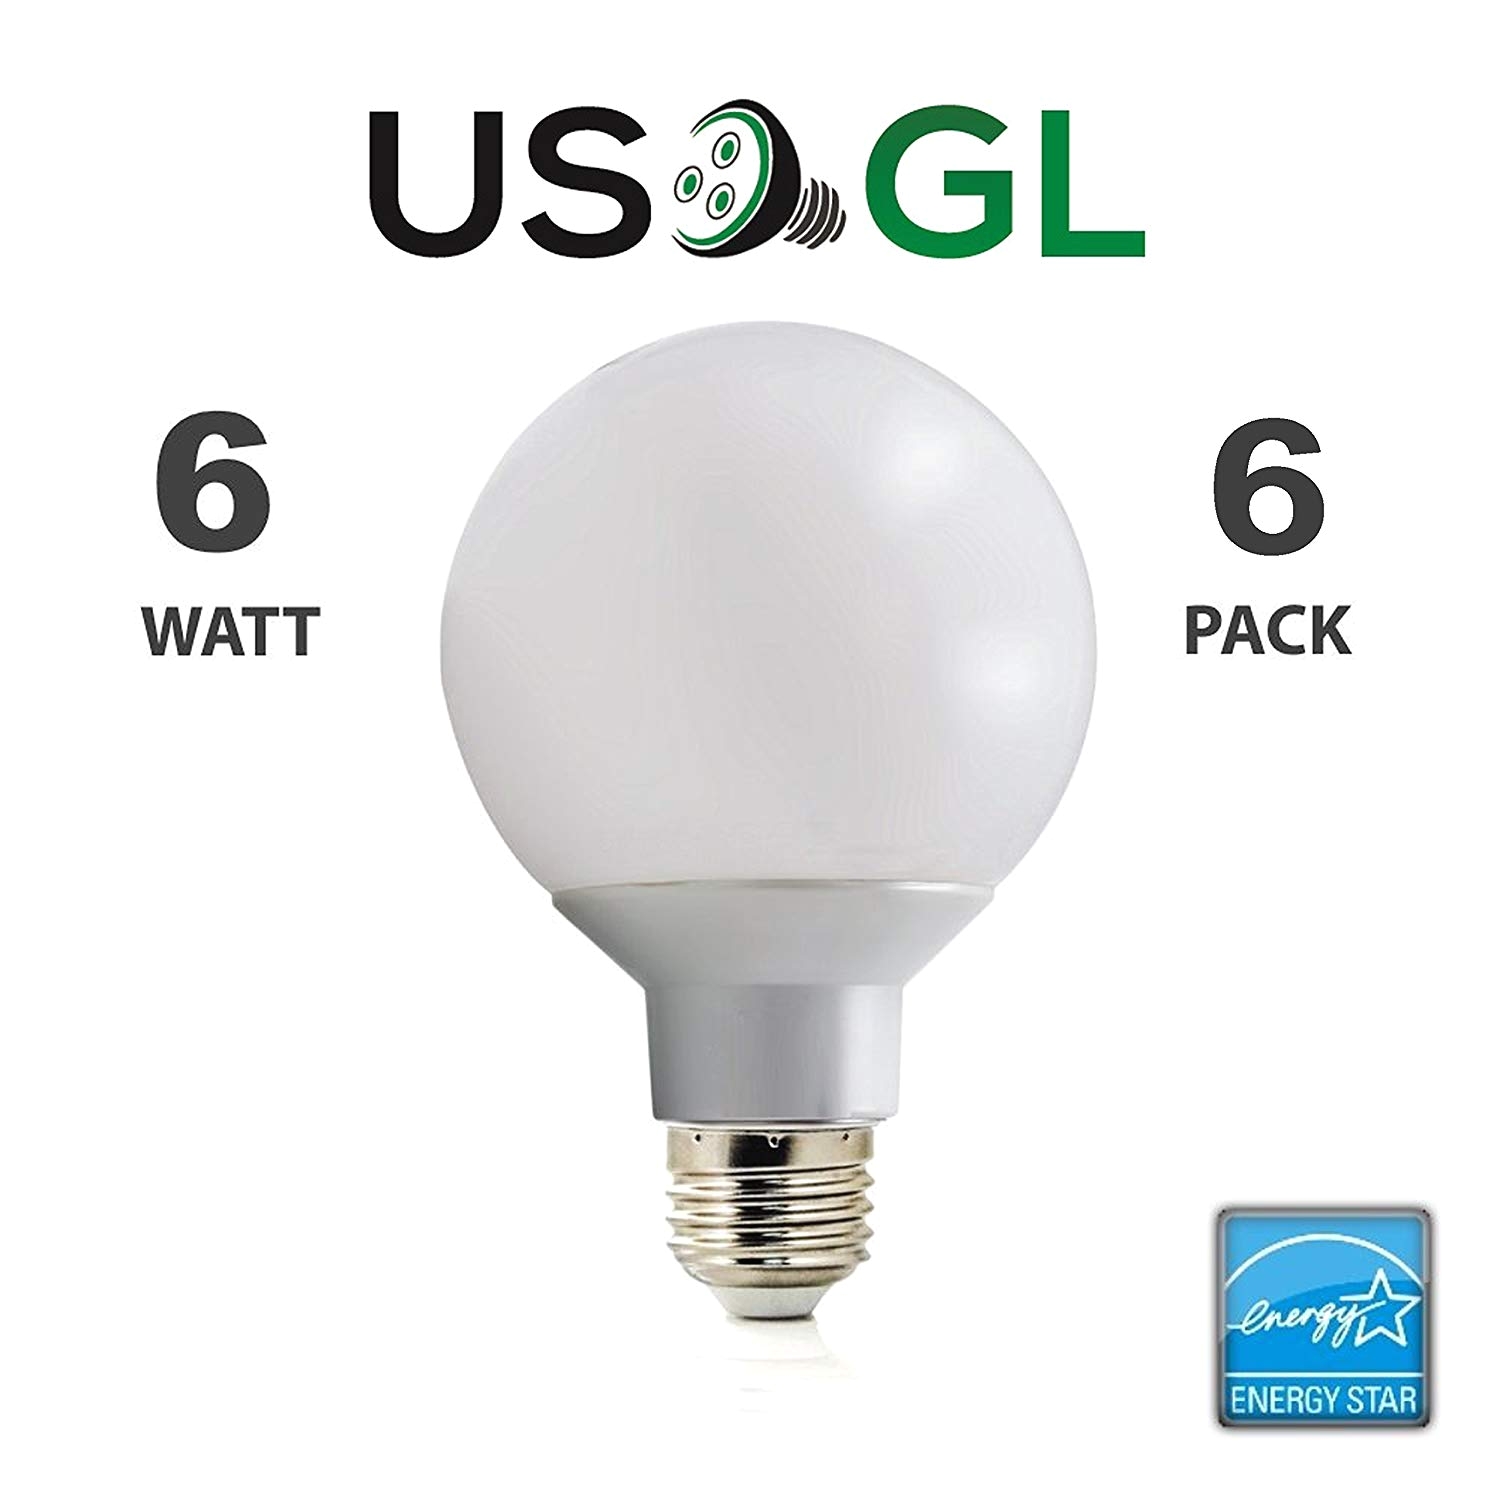 led g25 vanity globe light bulb dimmable 6w 40 watt equivalent warm white 2700k shatter resistant energy star e26 base 450 lumens